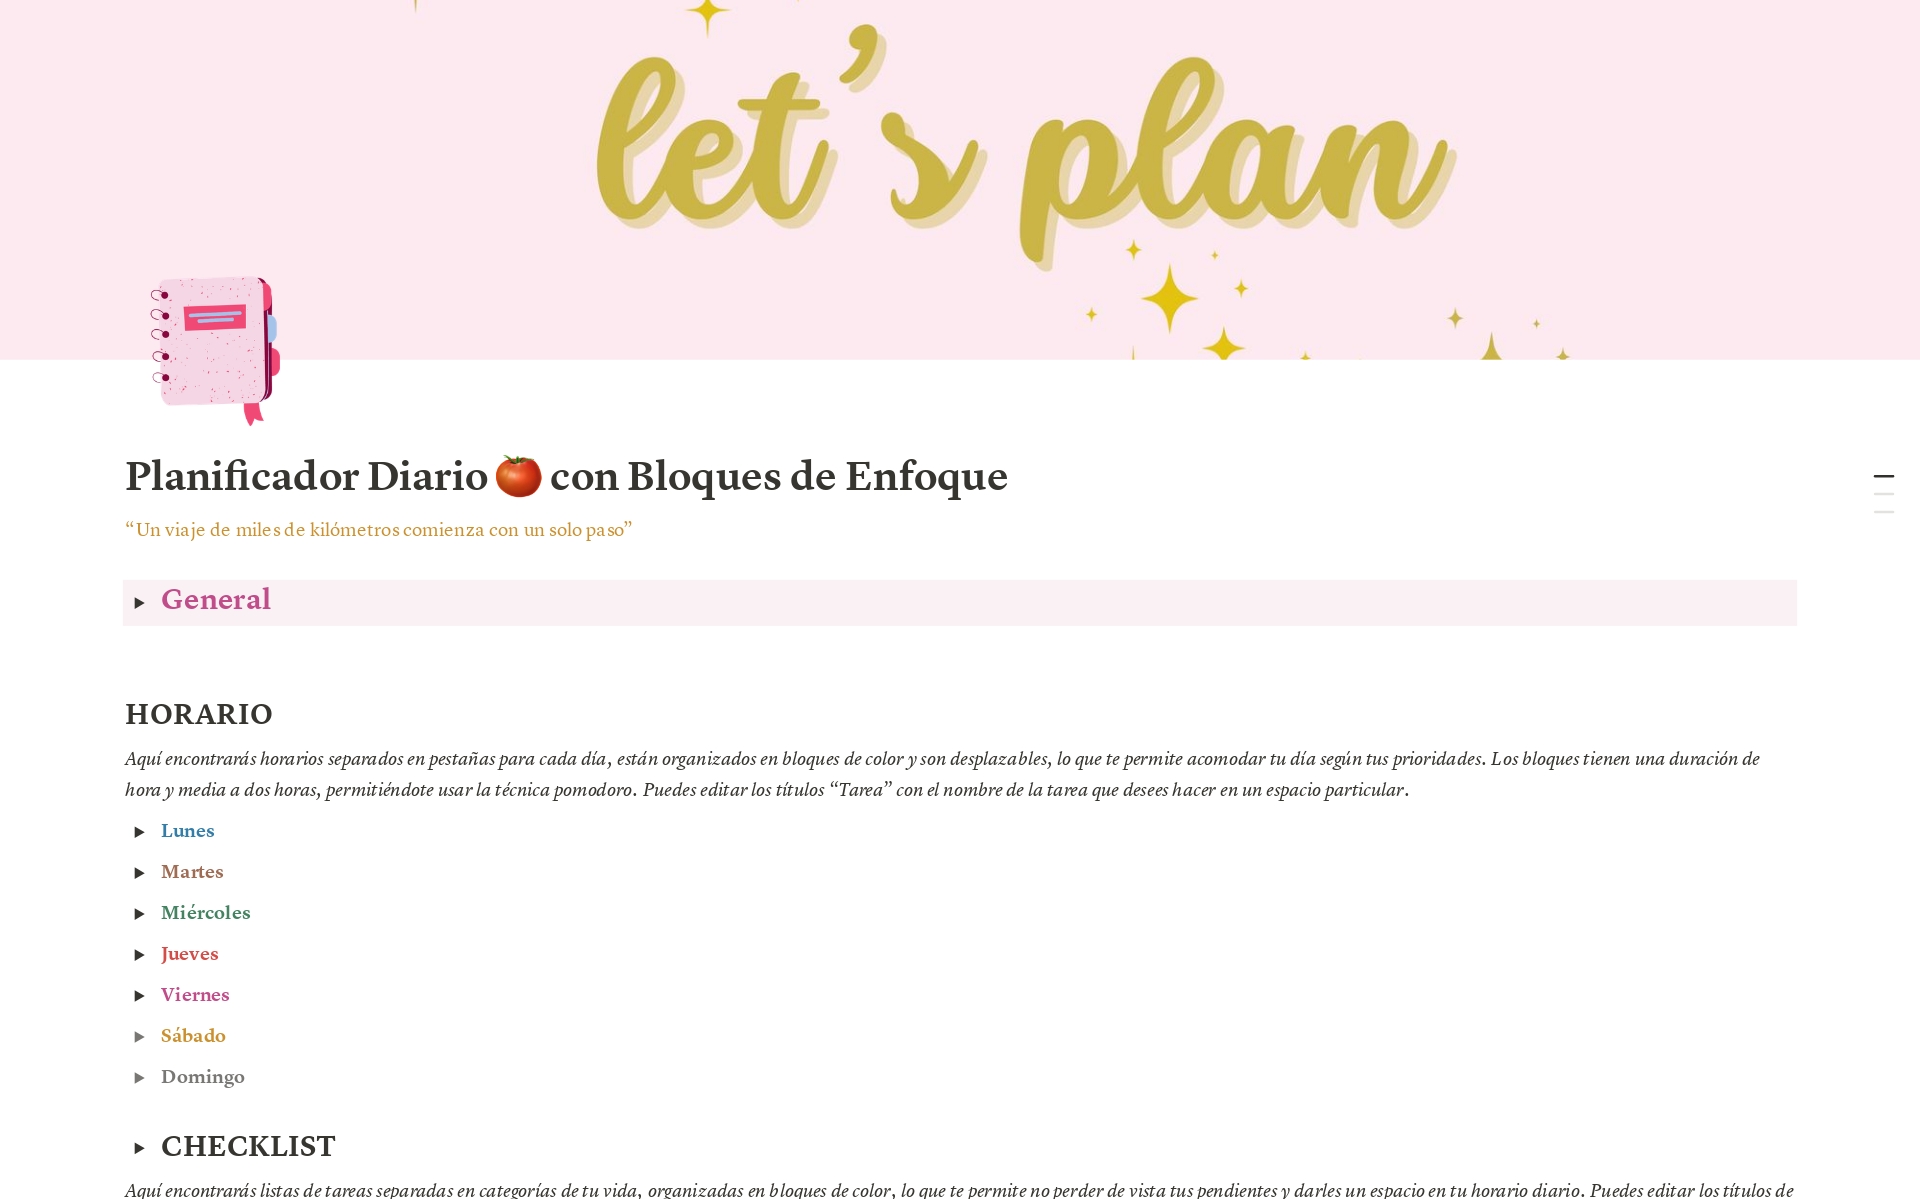 A template preview for Planificador Diario 🍅 con Bloques de Enfoque